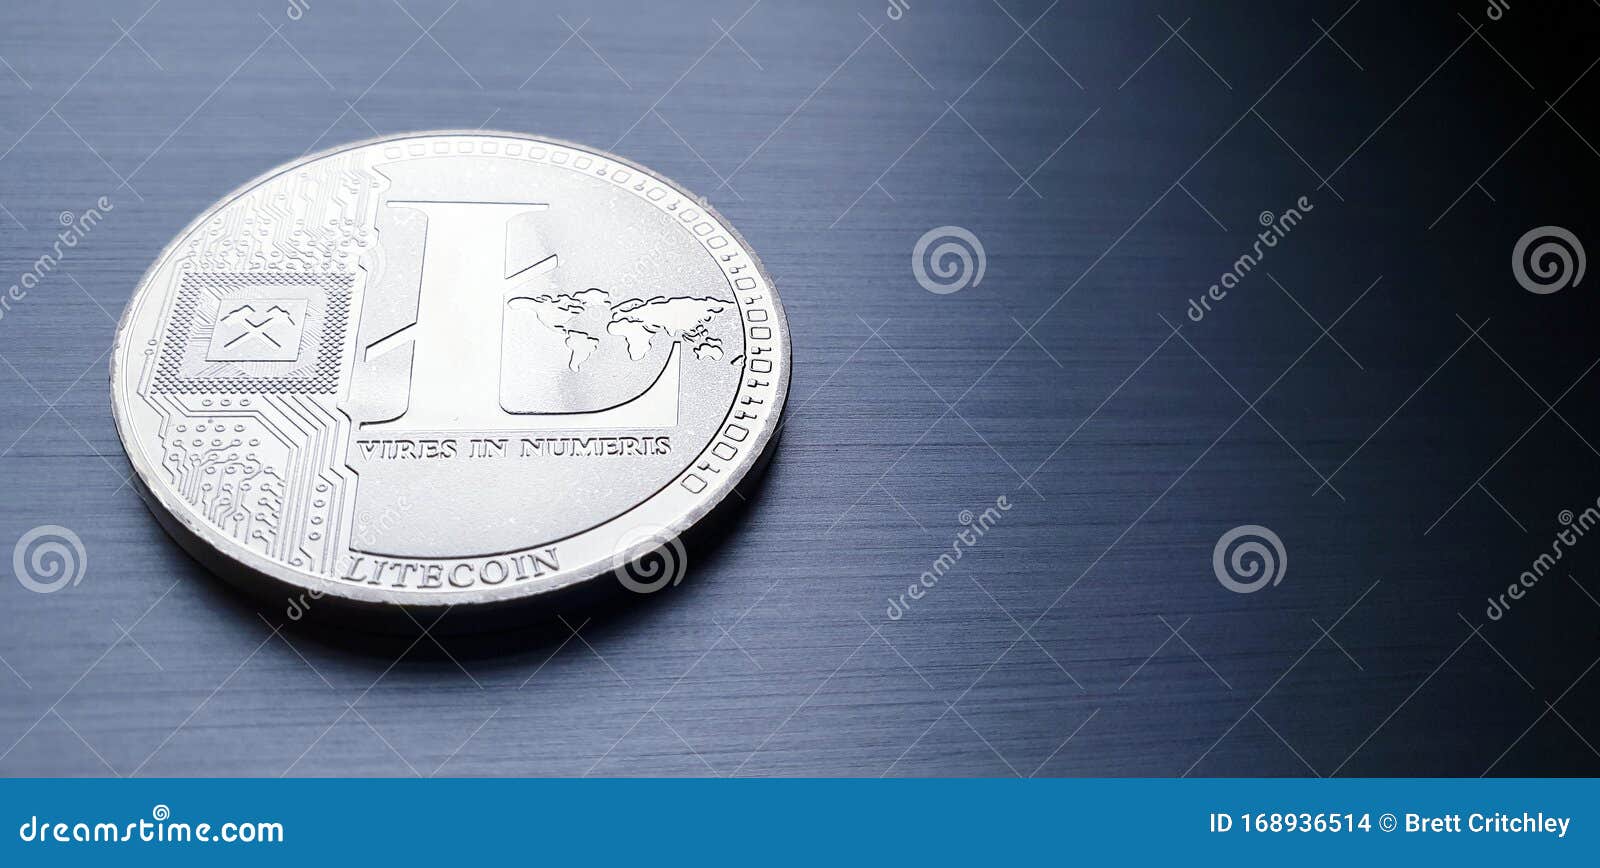 silver bitcoin litecoin coin